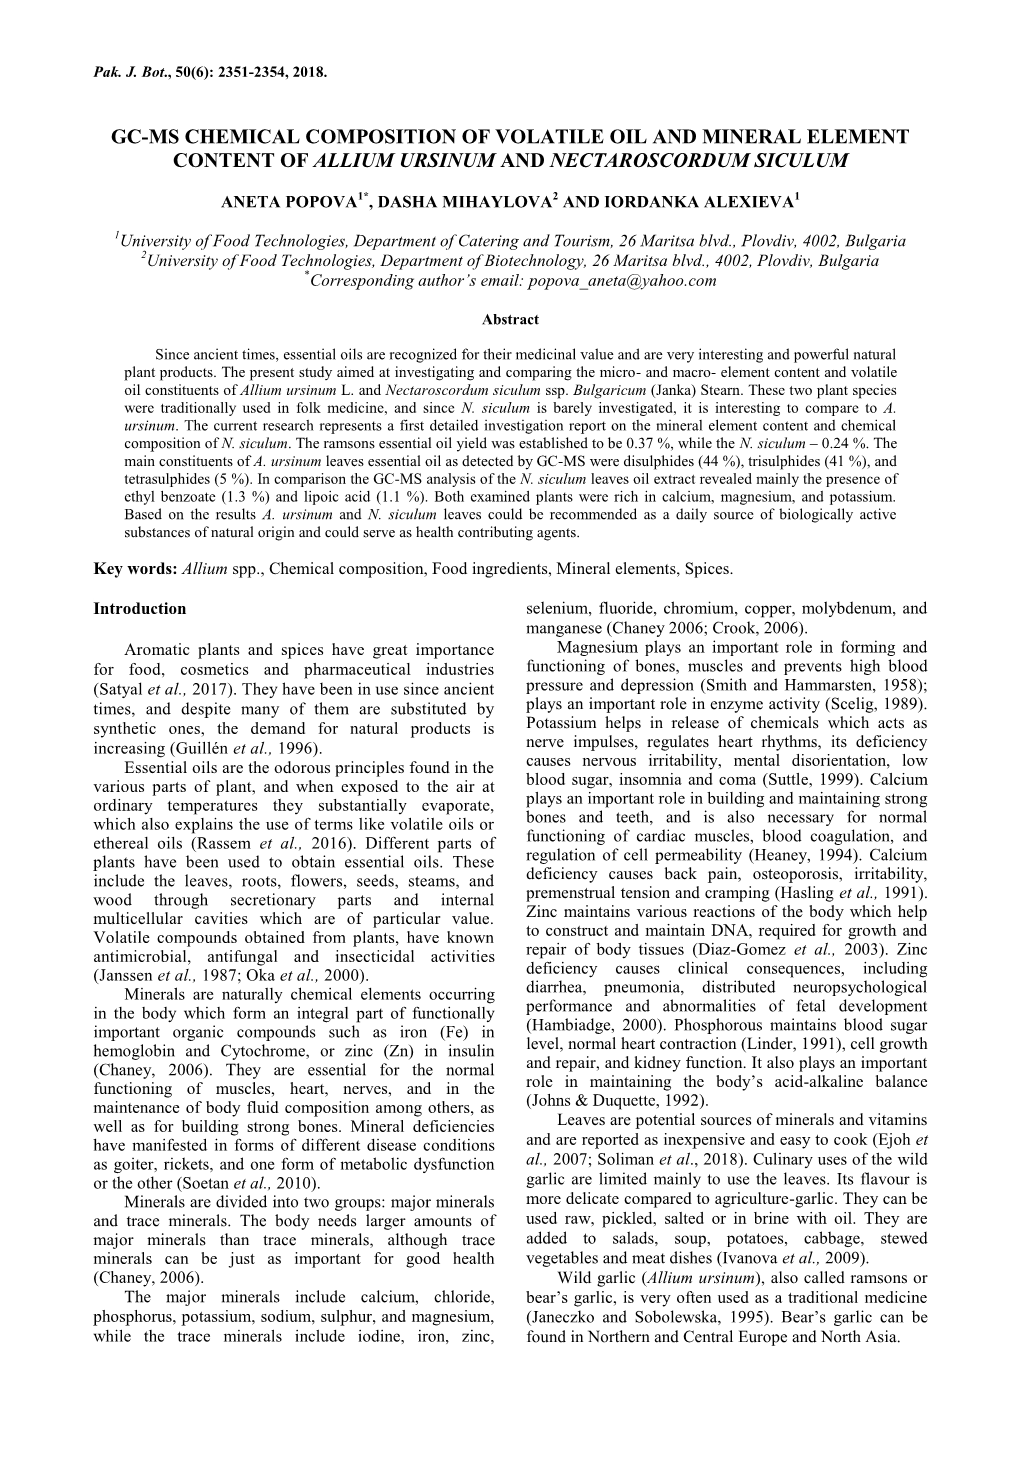 Gc-Ms Chemical Composition of Volatile Oil and Mineral Element Content of Allium Ursinum and Nectaroscordum Siculum